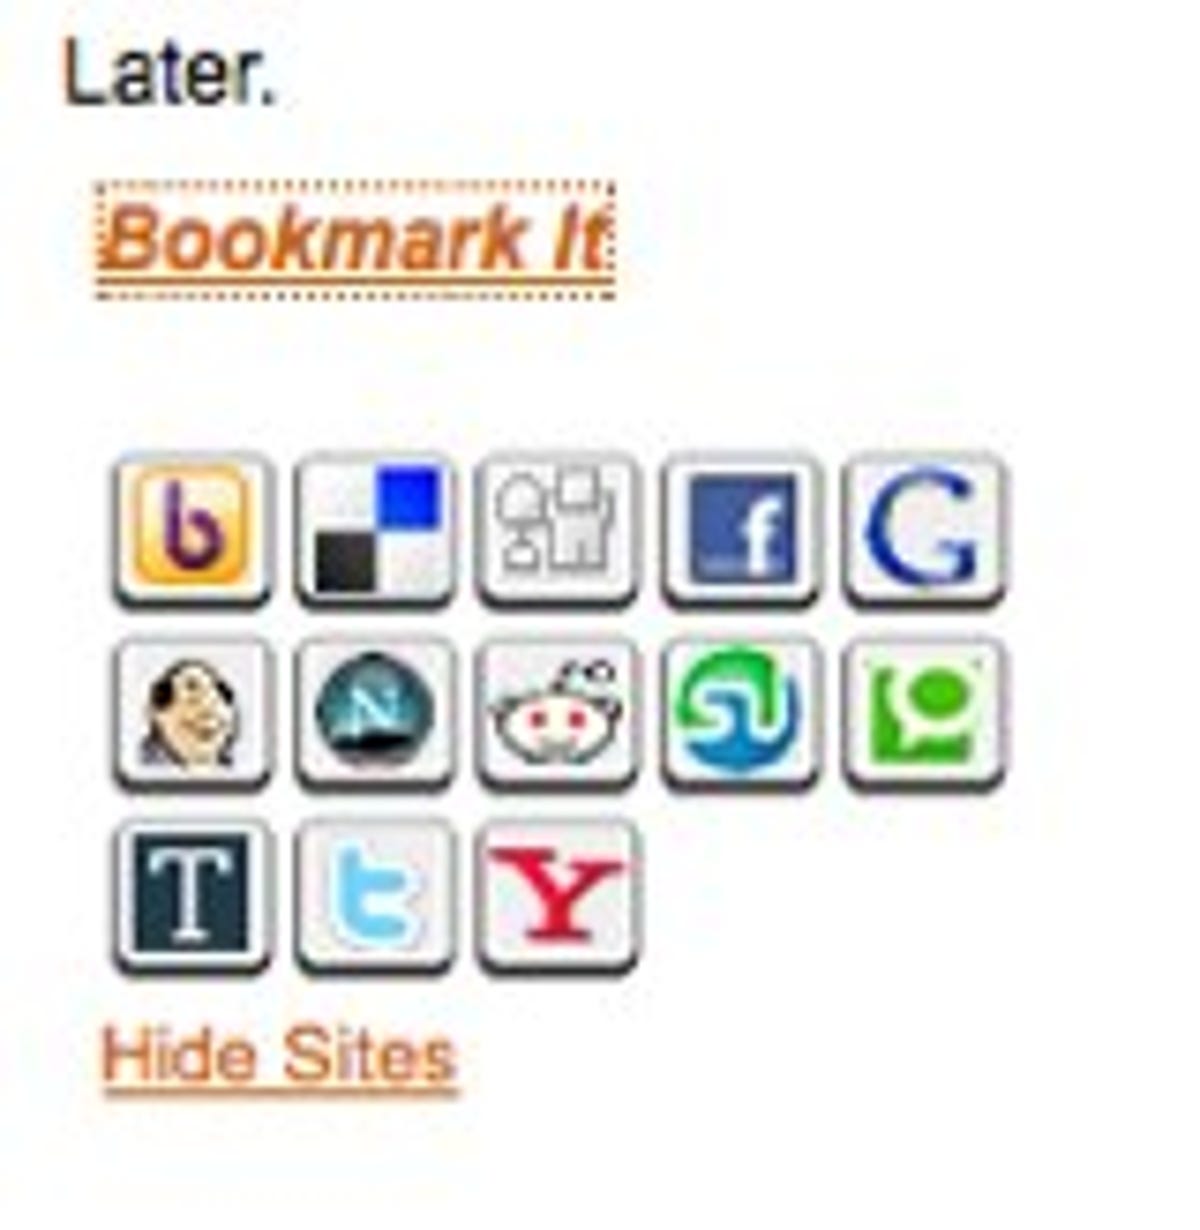 Social Bookmark